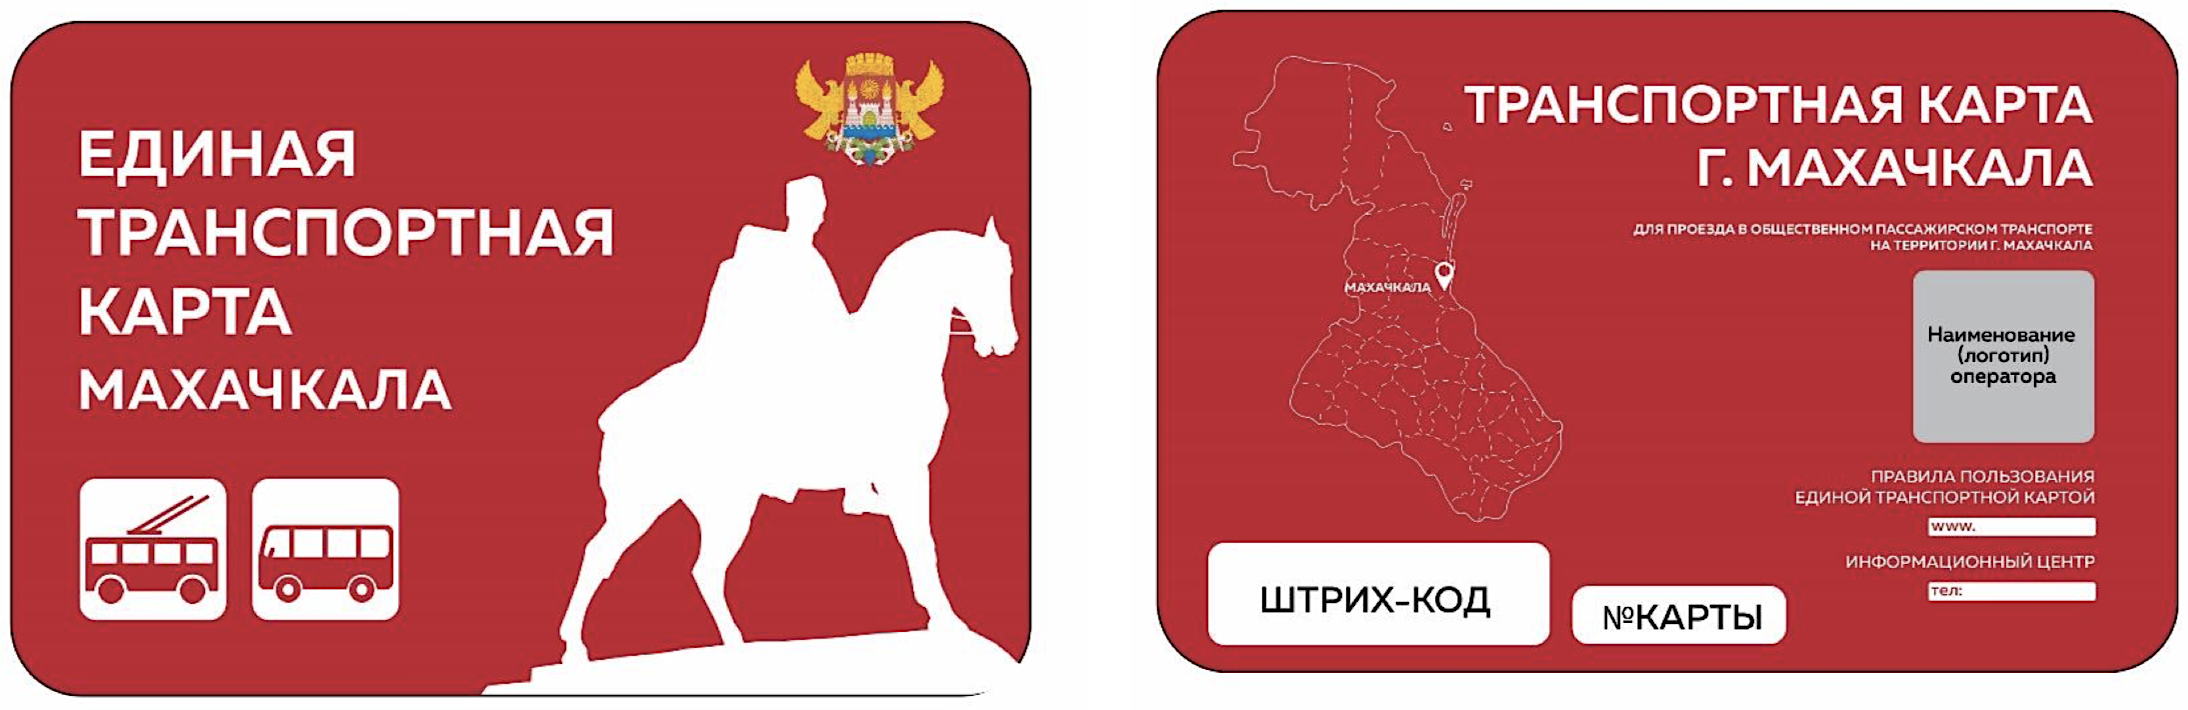 Транспортная карта. Единая транспортная карта. Транспортная Проездная карта. Транспортная карта Дагестан.